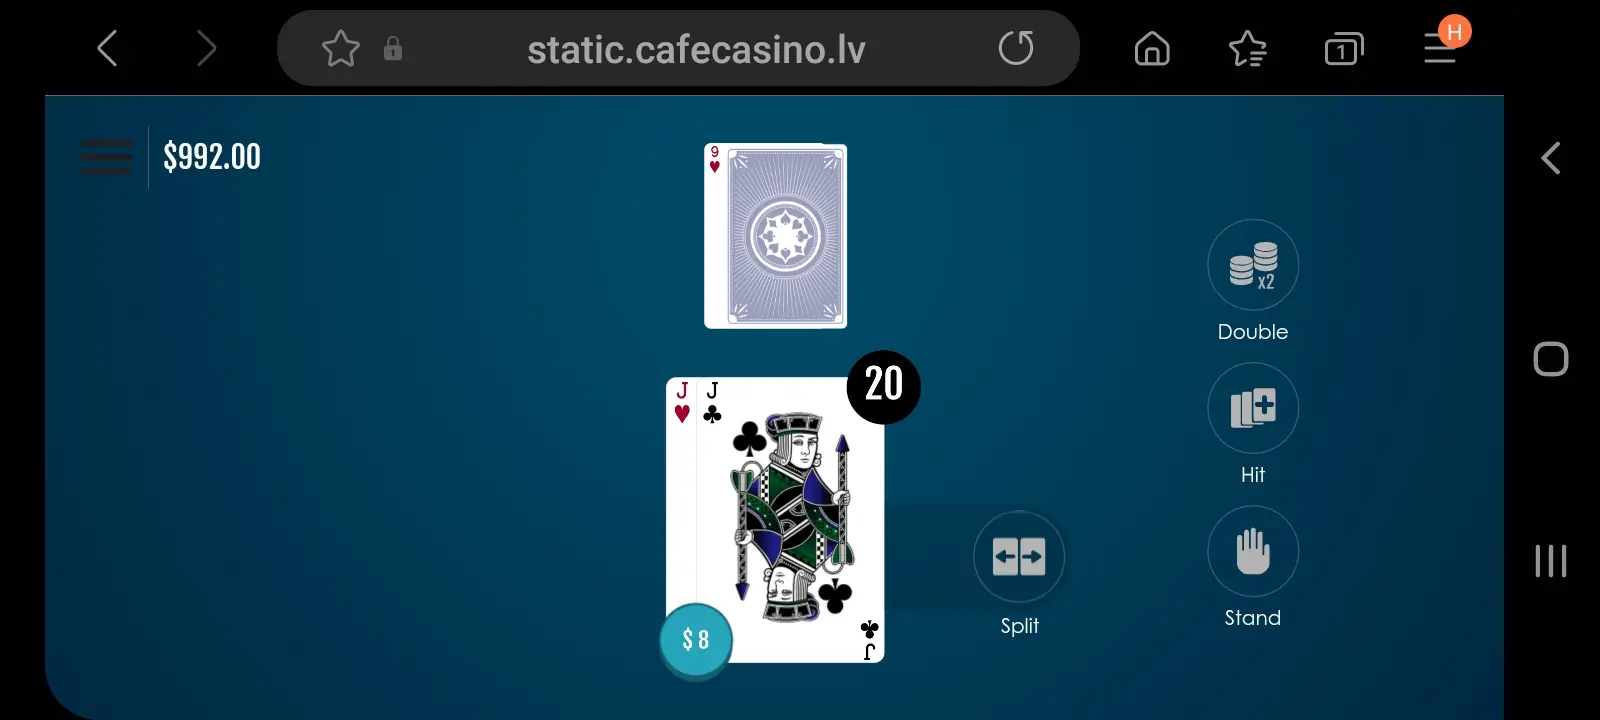 cafe casino app screenshot 4